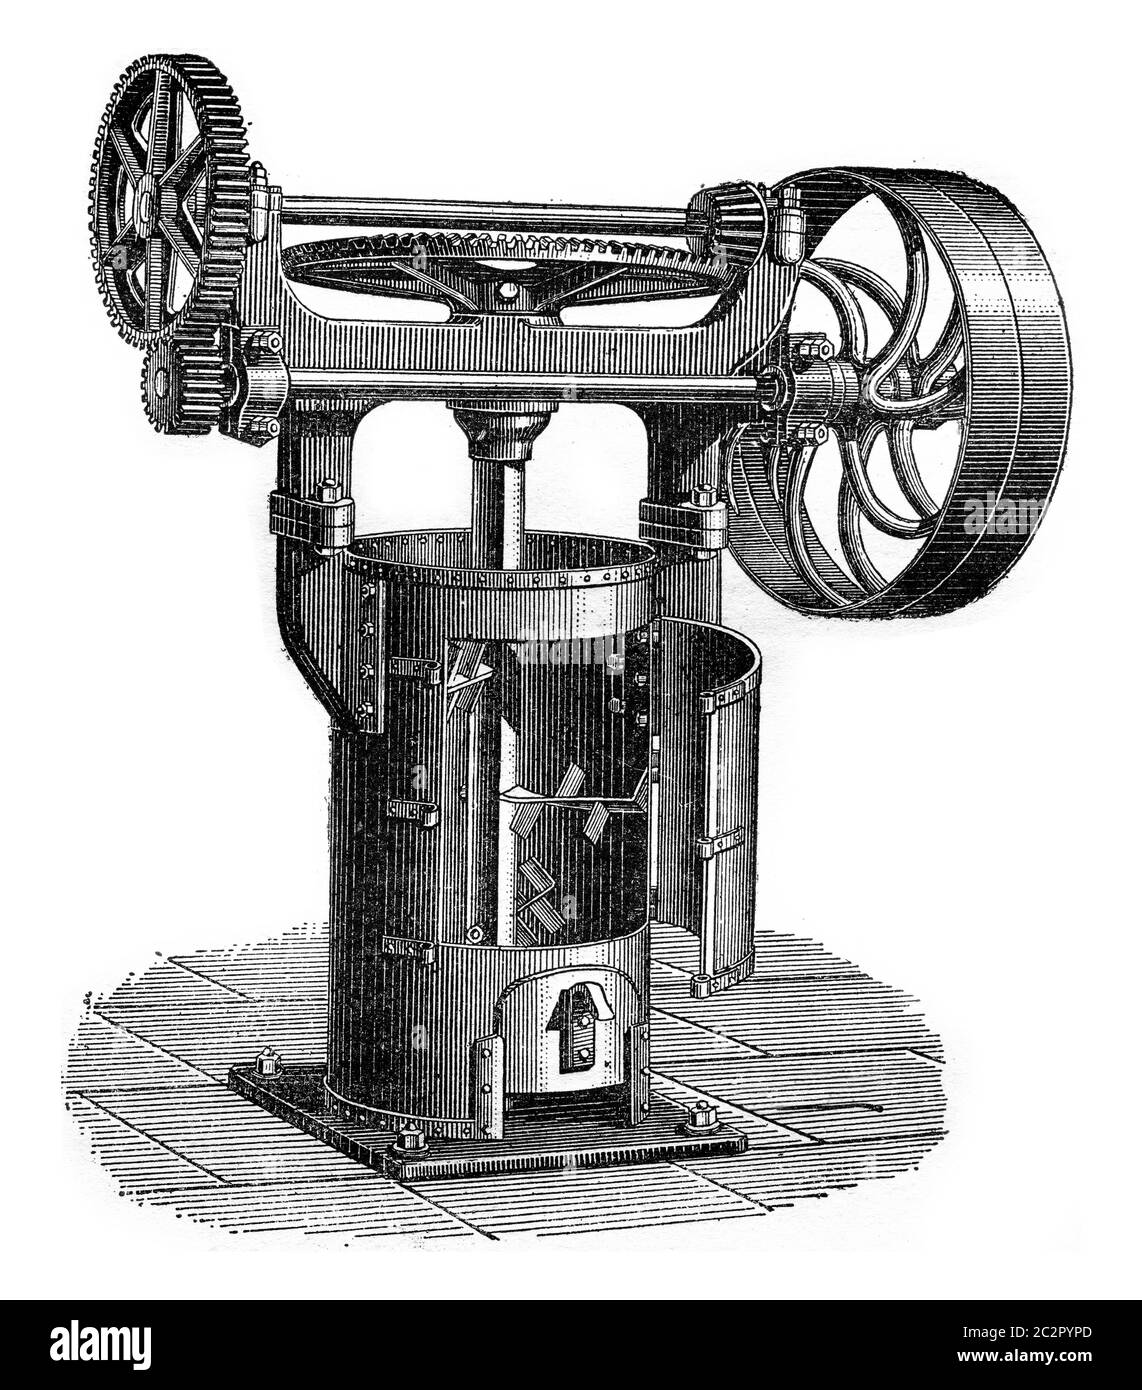 Mélangeur vertical semi-terrain, illustration gravée vintage. Encyclopédie industrielle E.-O. Lami - 1875. Banque D'Images